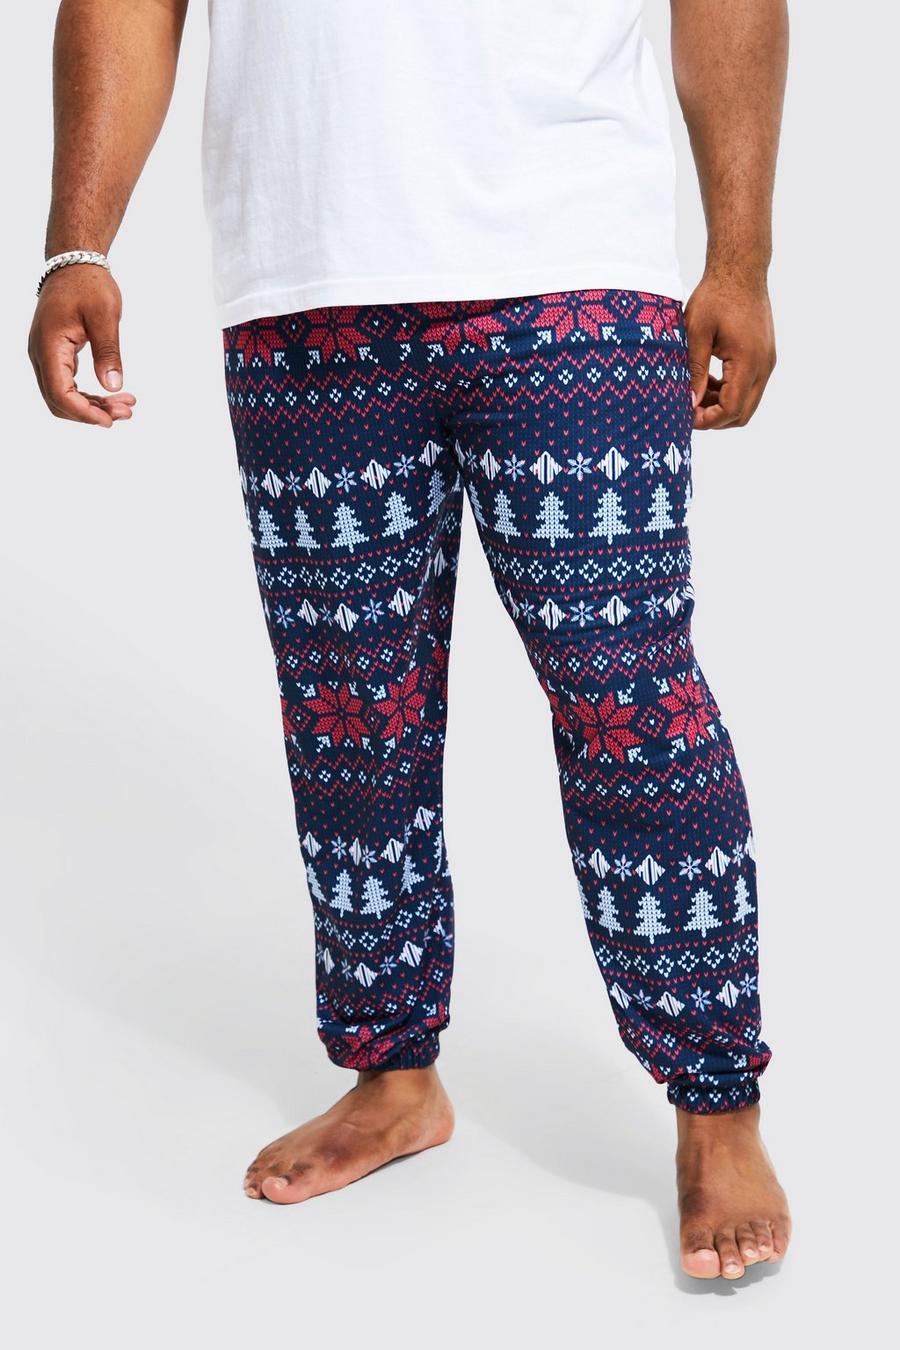 Pantaloni tuta di Loungewear natalizio Plus Size con motivi Fairisle, Navy blu oltremare